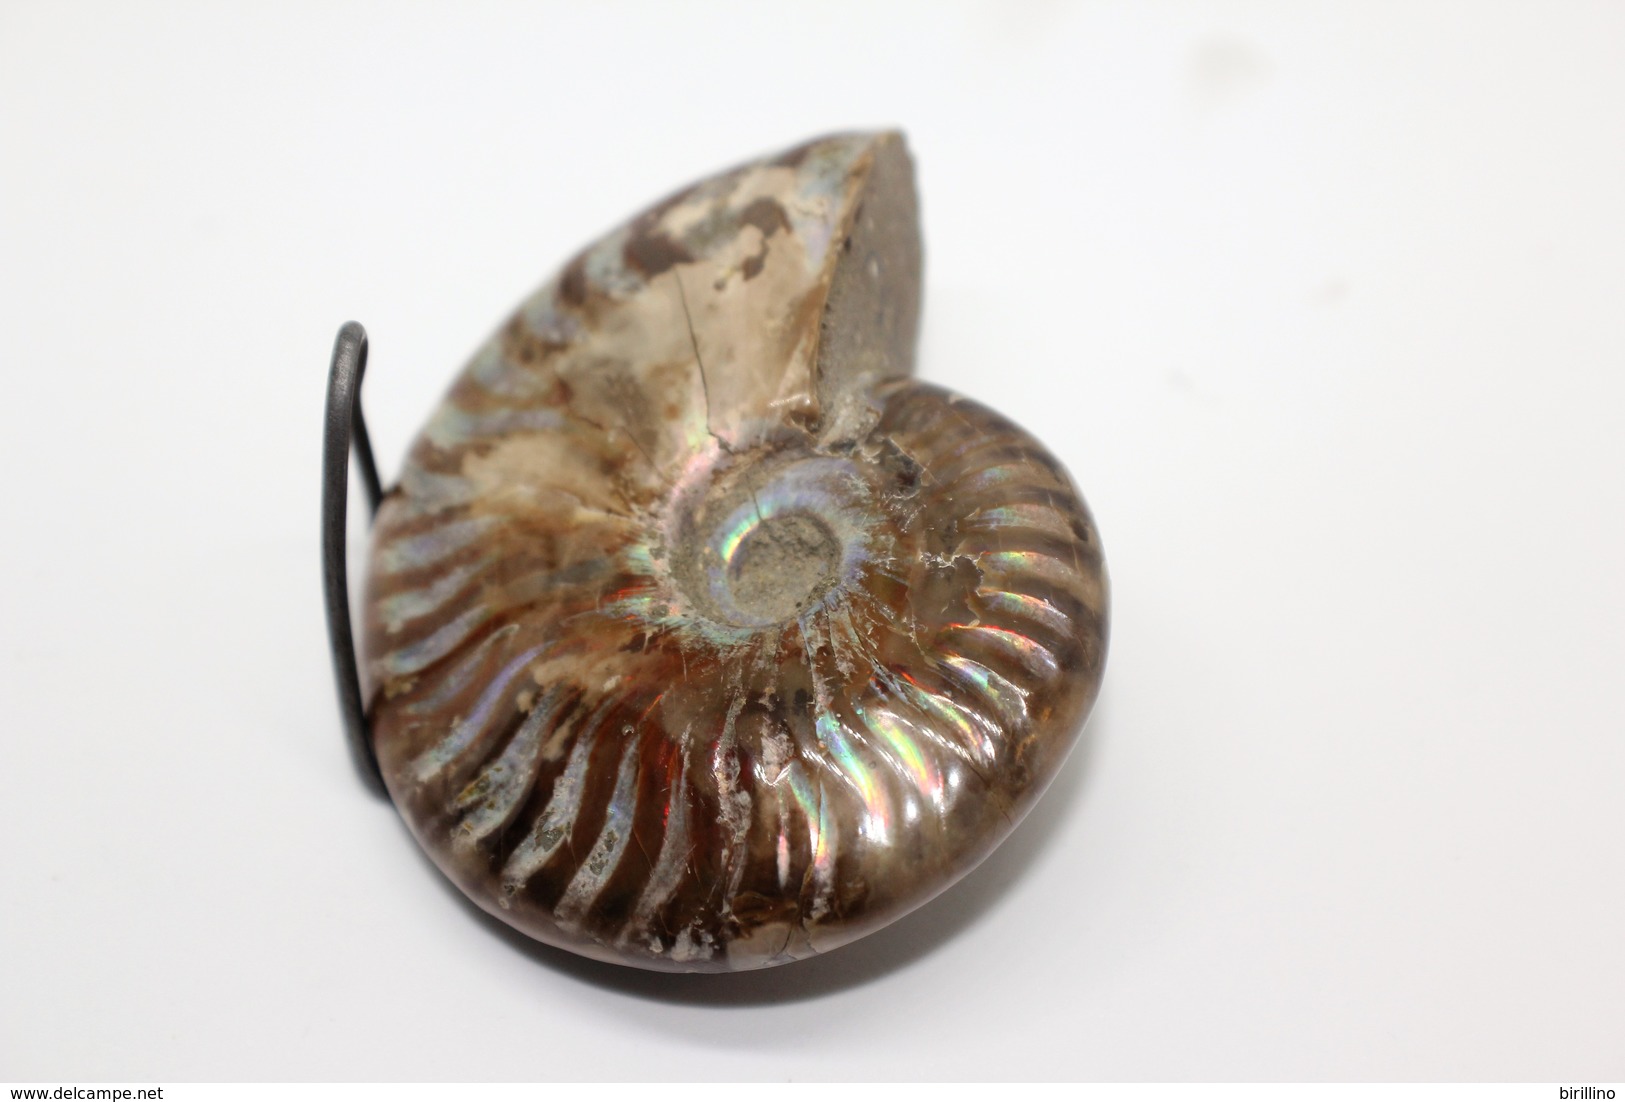 824 - Raro fossile di ammonite di conchiglia - Provenienza Madagascar Peso 109 gr